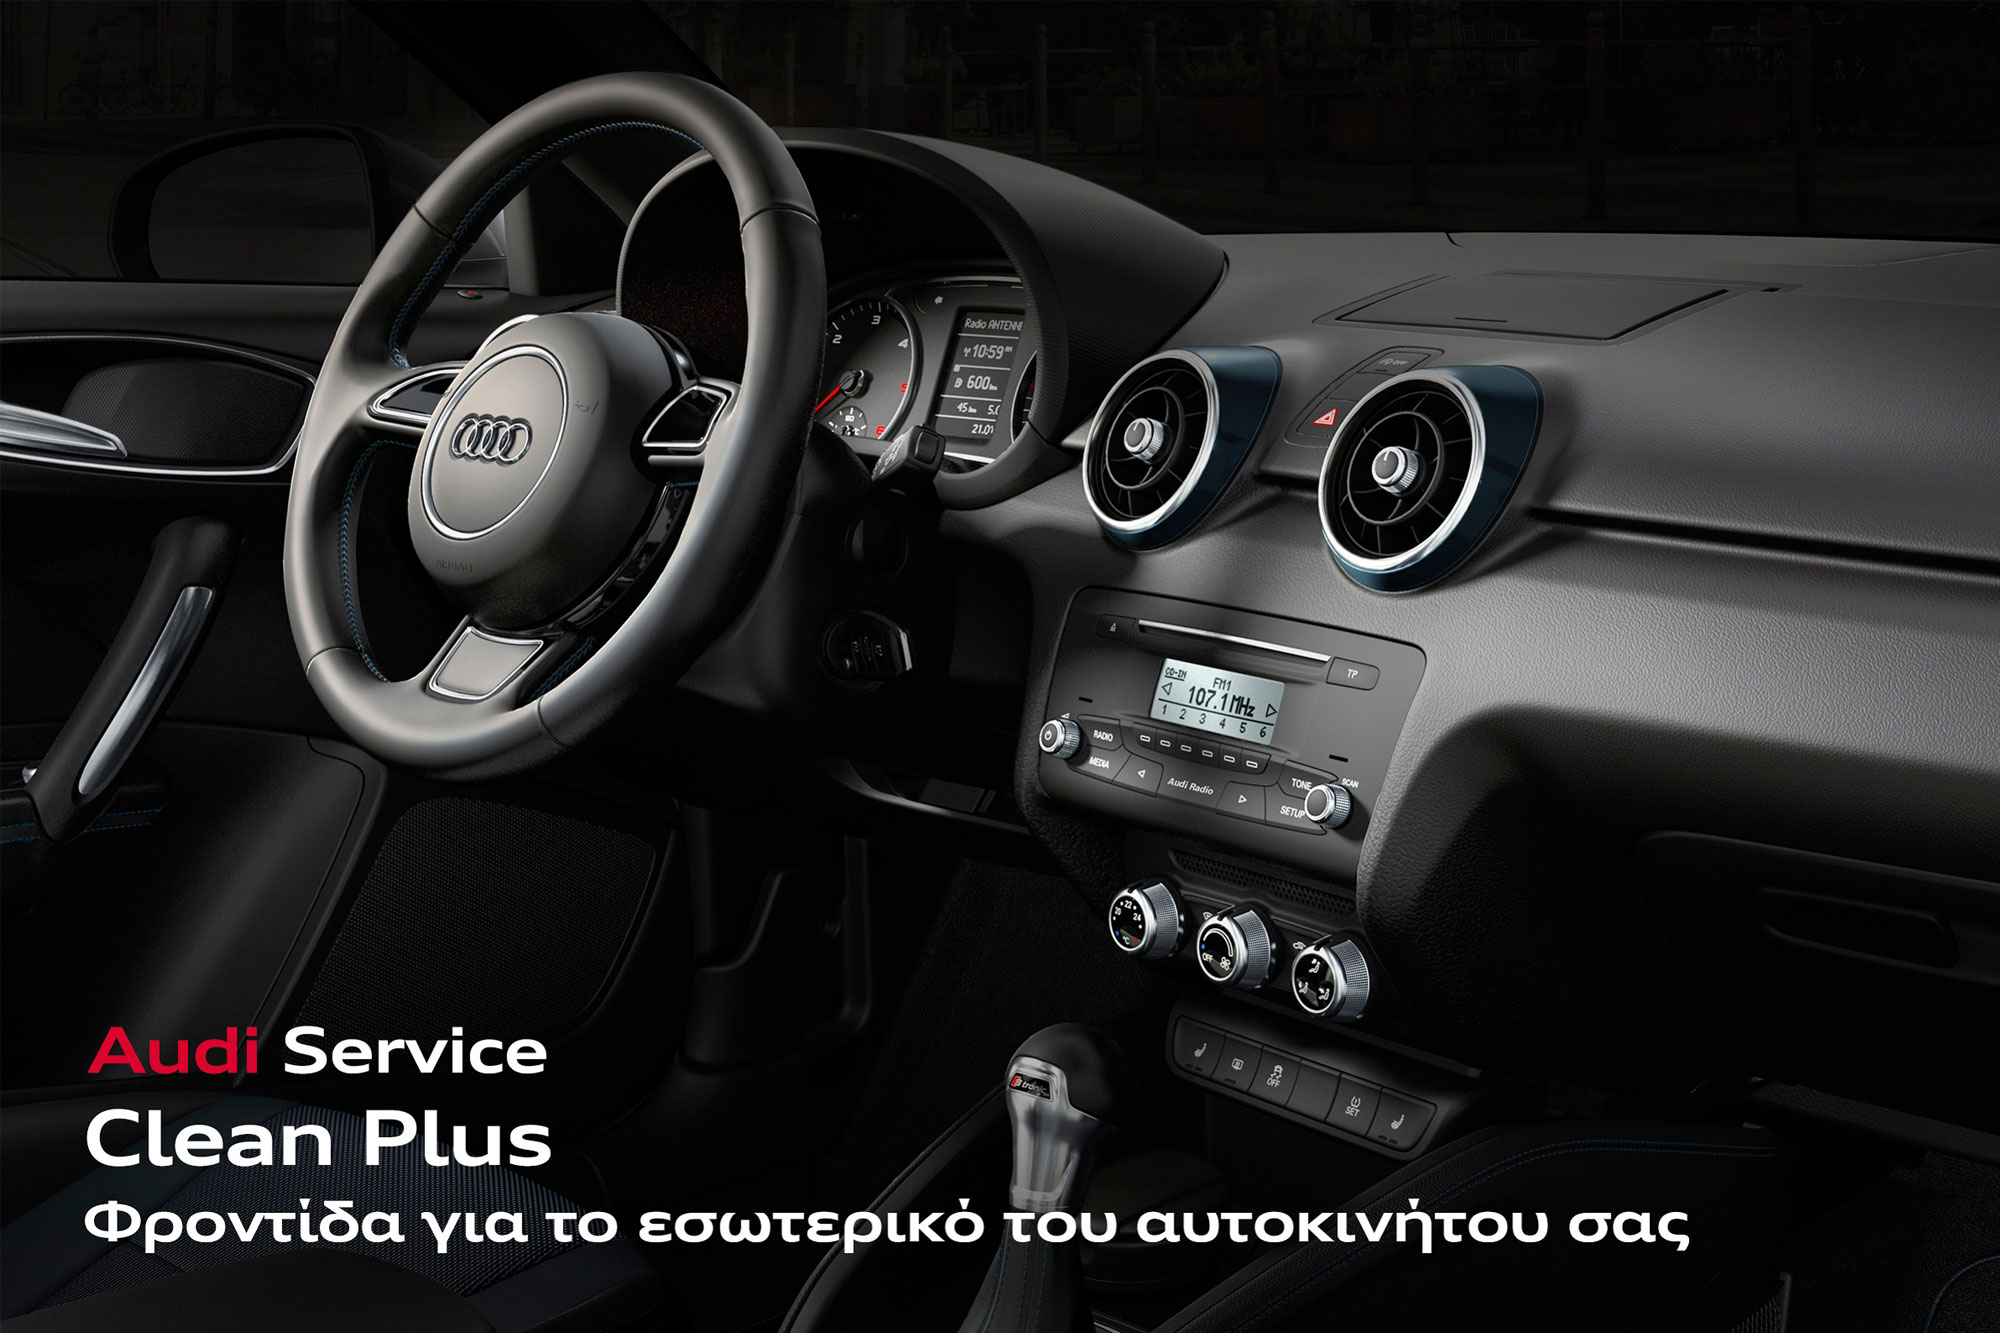 Πακέτα service “Smart Packs” και ψηφιακές After Sales υπηρεσίες από την Audi 